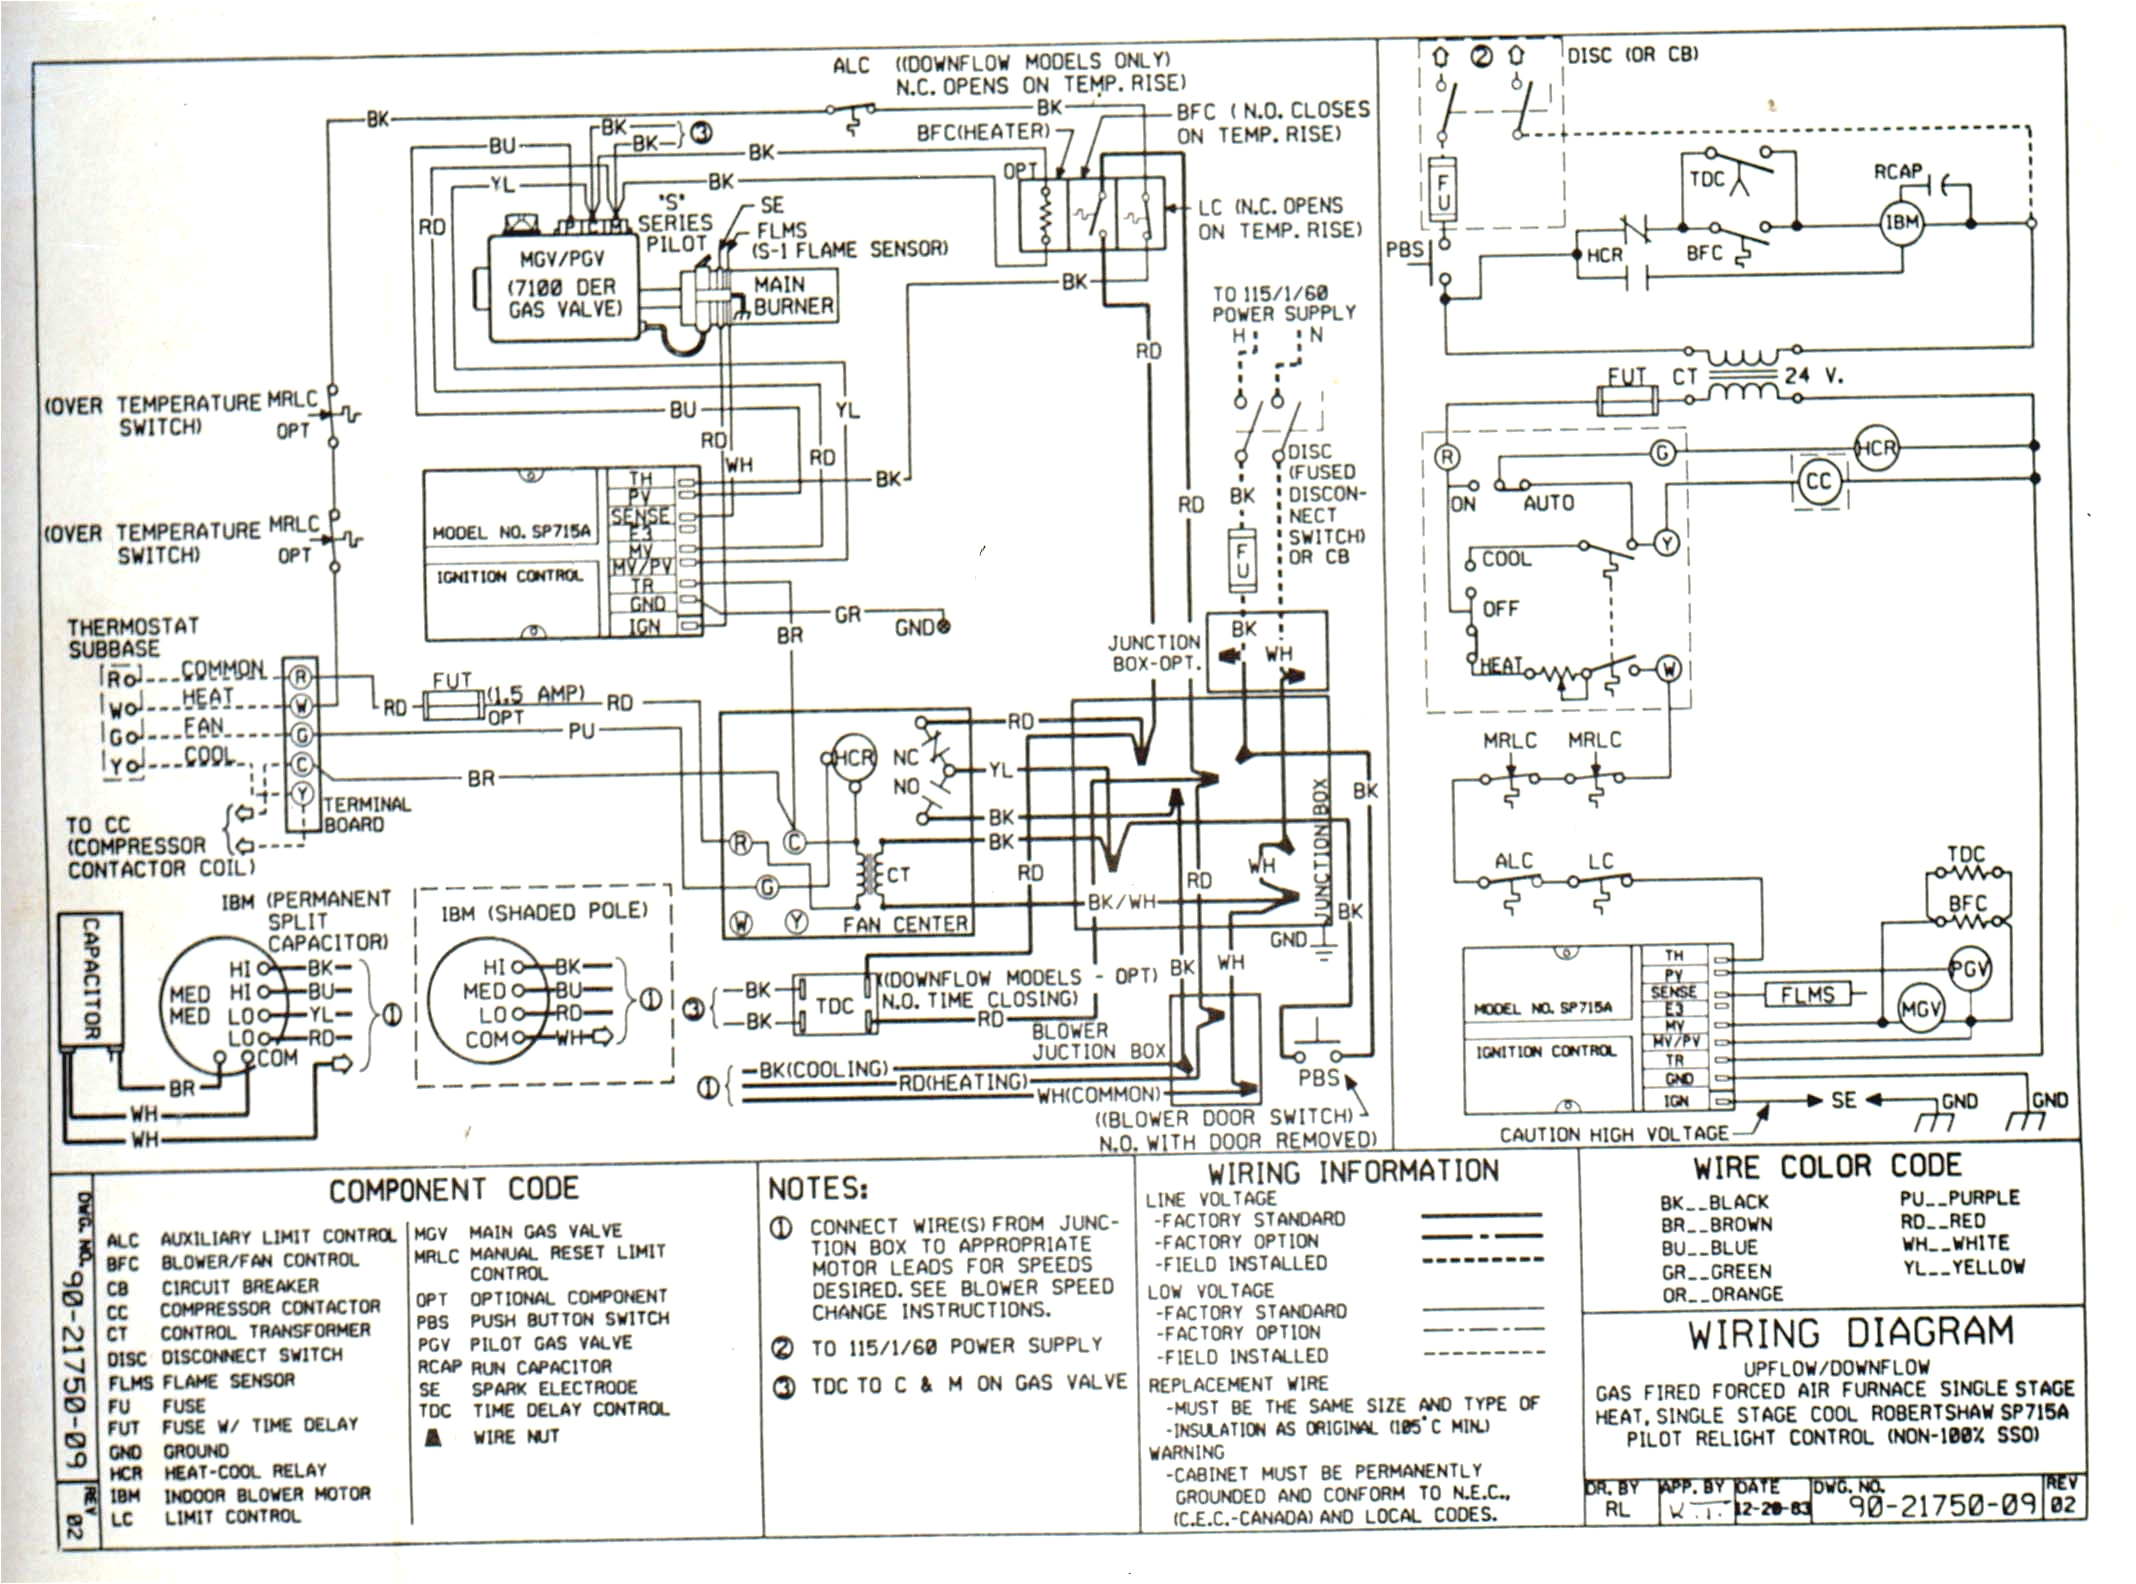 ecobee4 wiring diagram best of ecobee4 wiring diagram best wiring a ac thermostat diagram valid